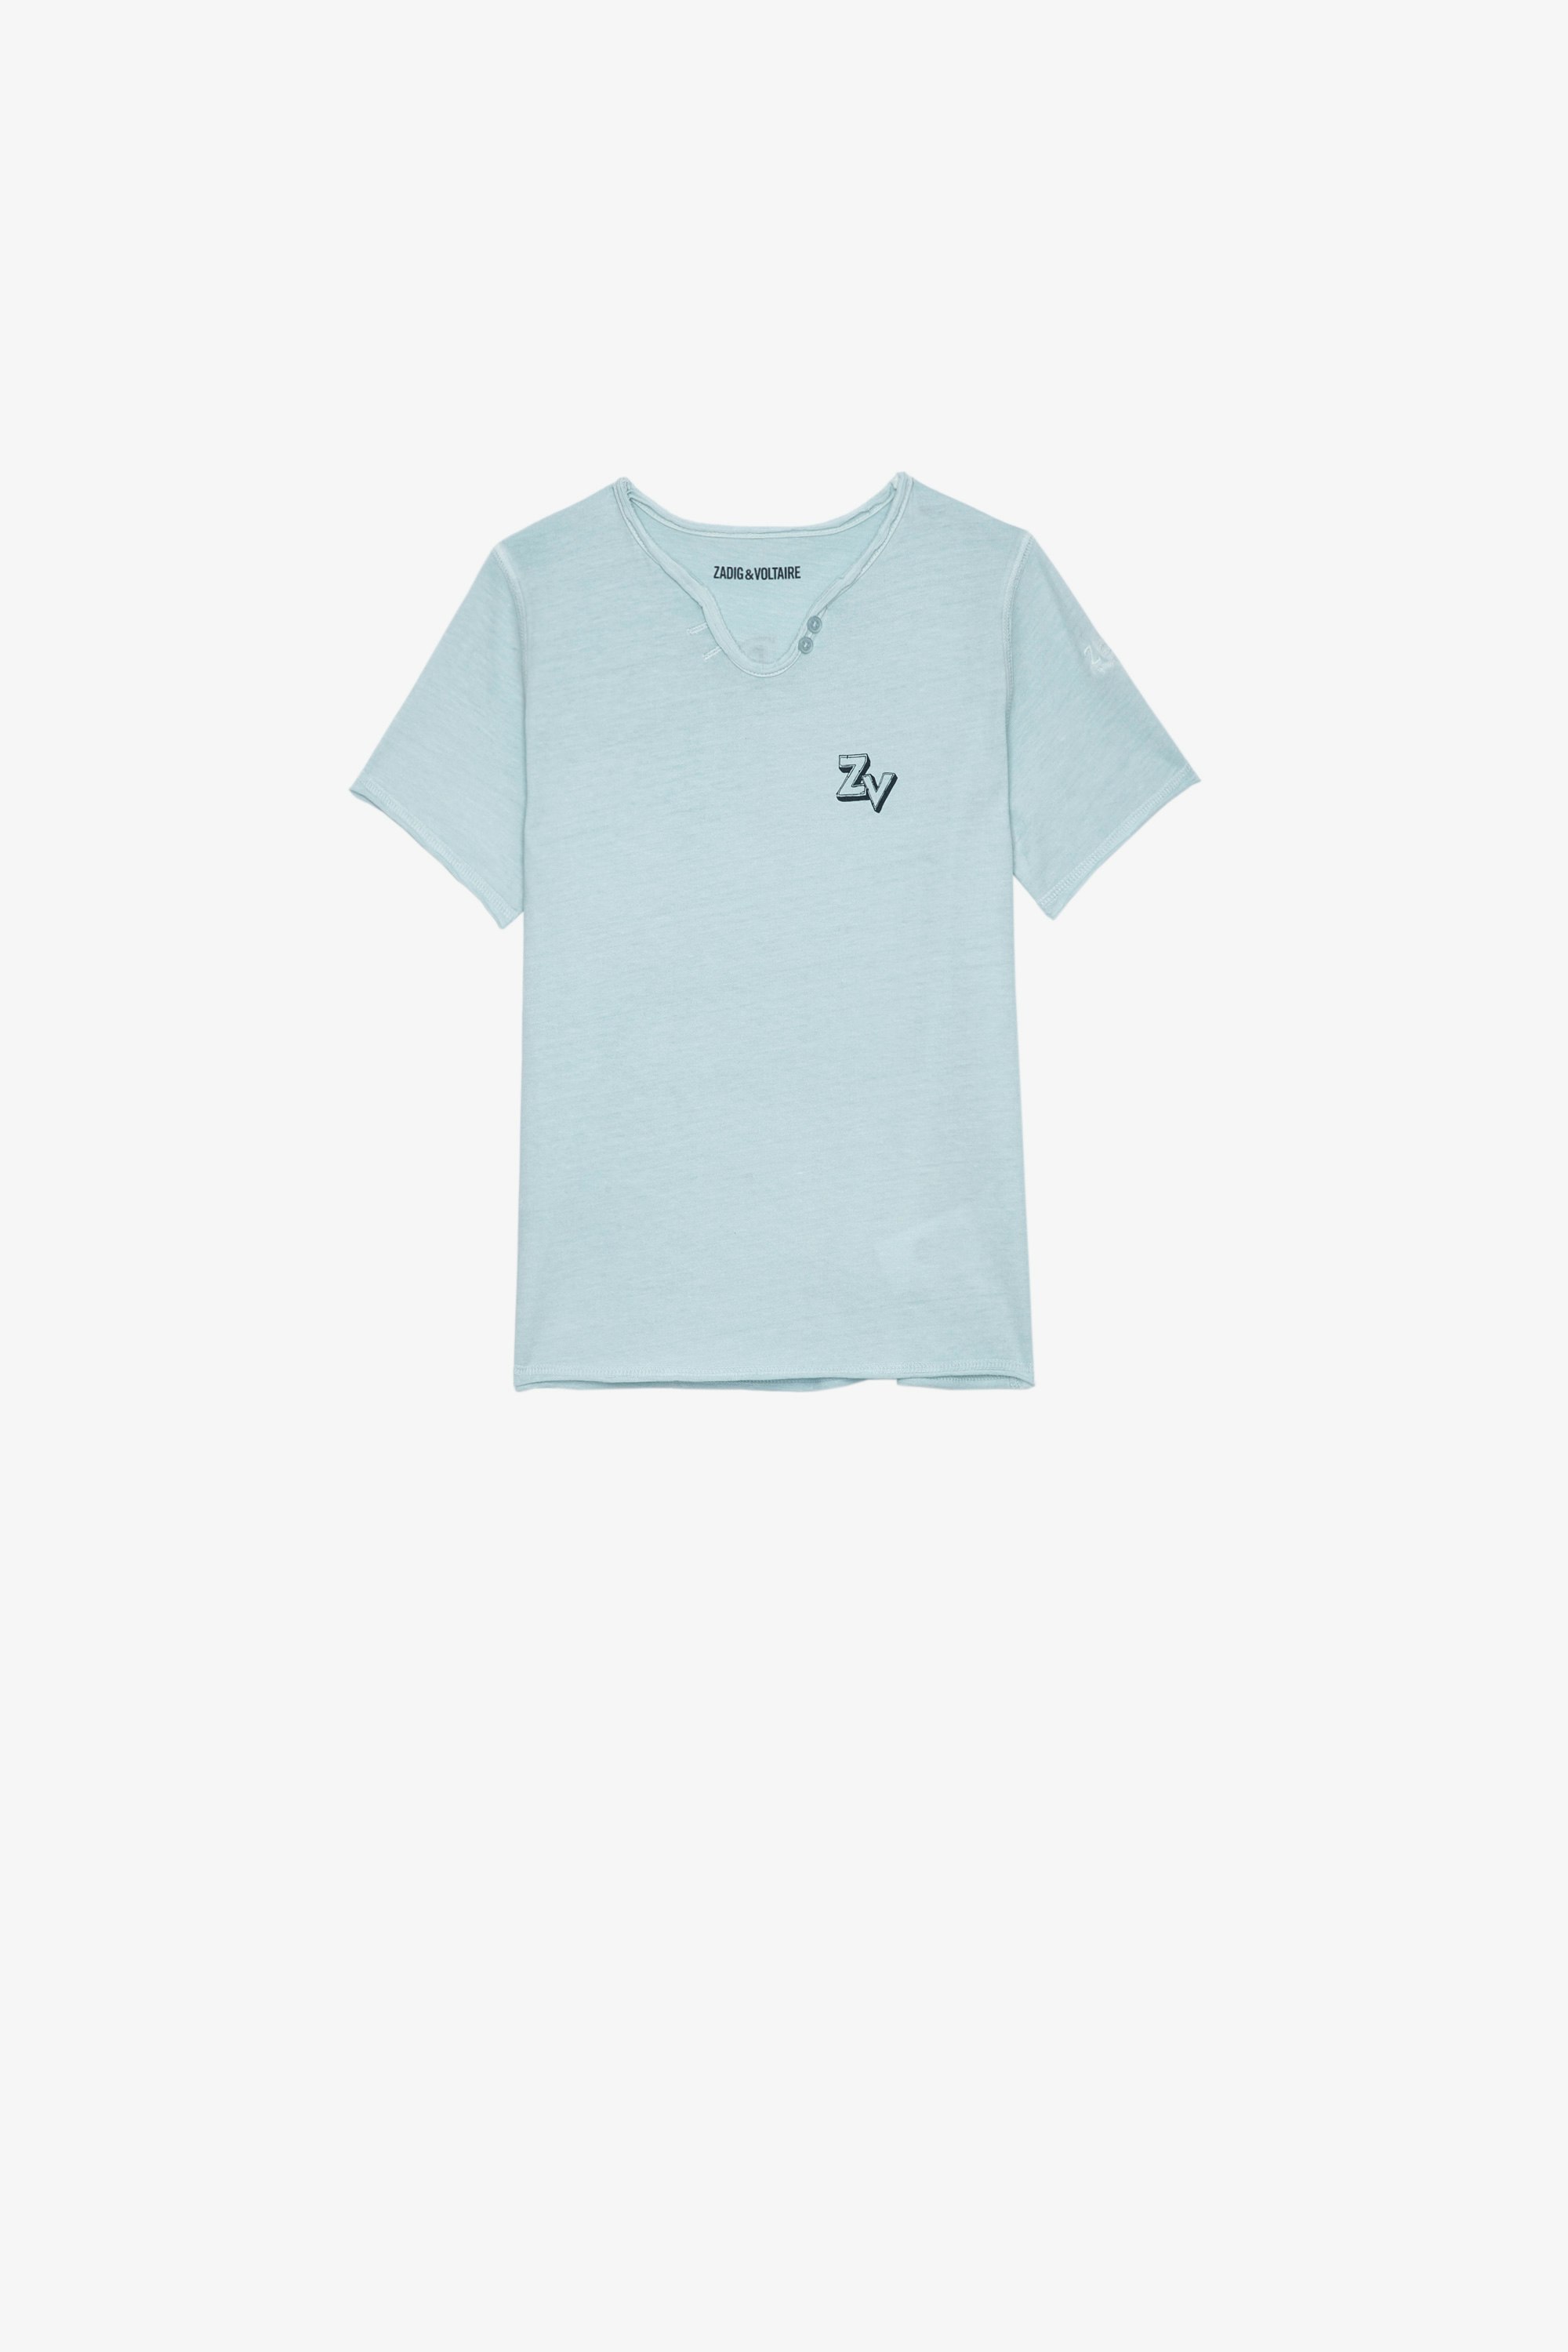 Kinder-T-Shirt Boxer Kurzärmeliges Kinder-T-Shirt aus himmelblauem Baumwolljersey mit Gitarrenprint, ZV-Signatur und Stickereien